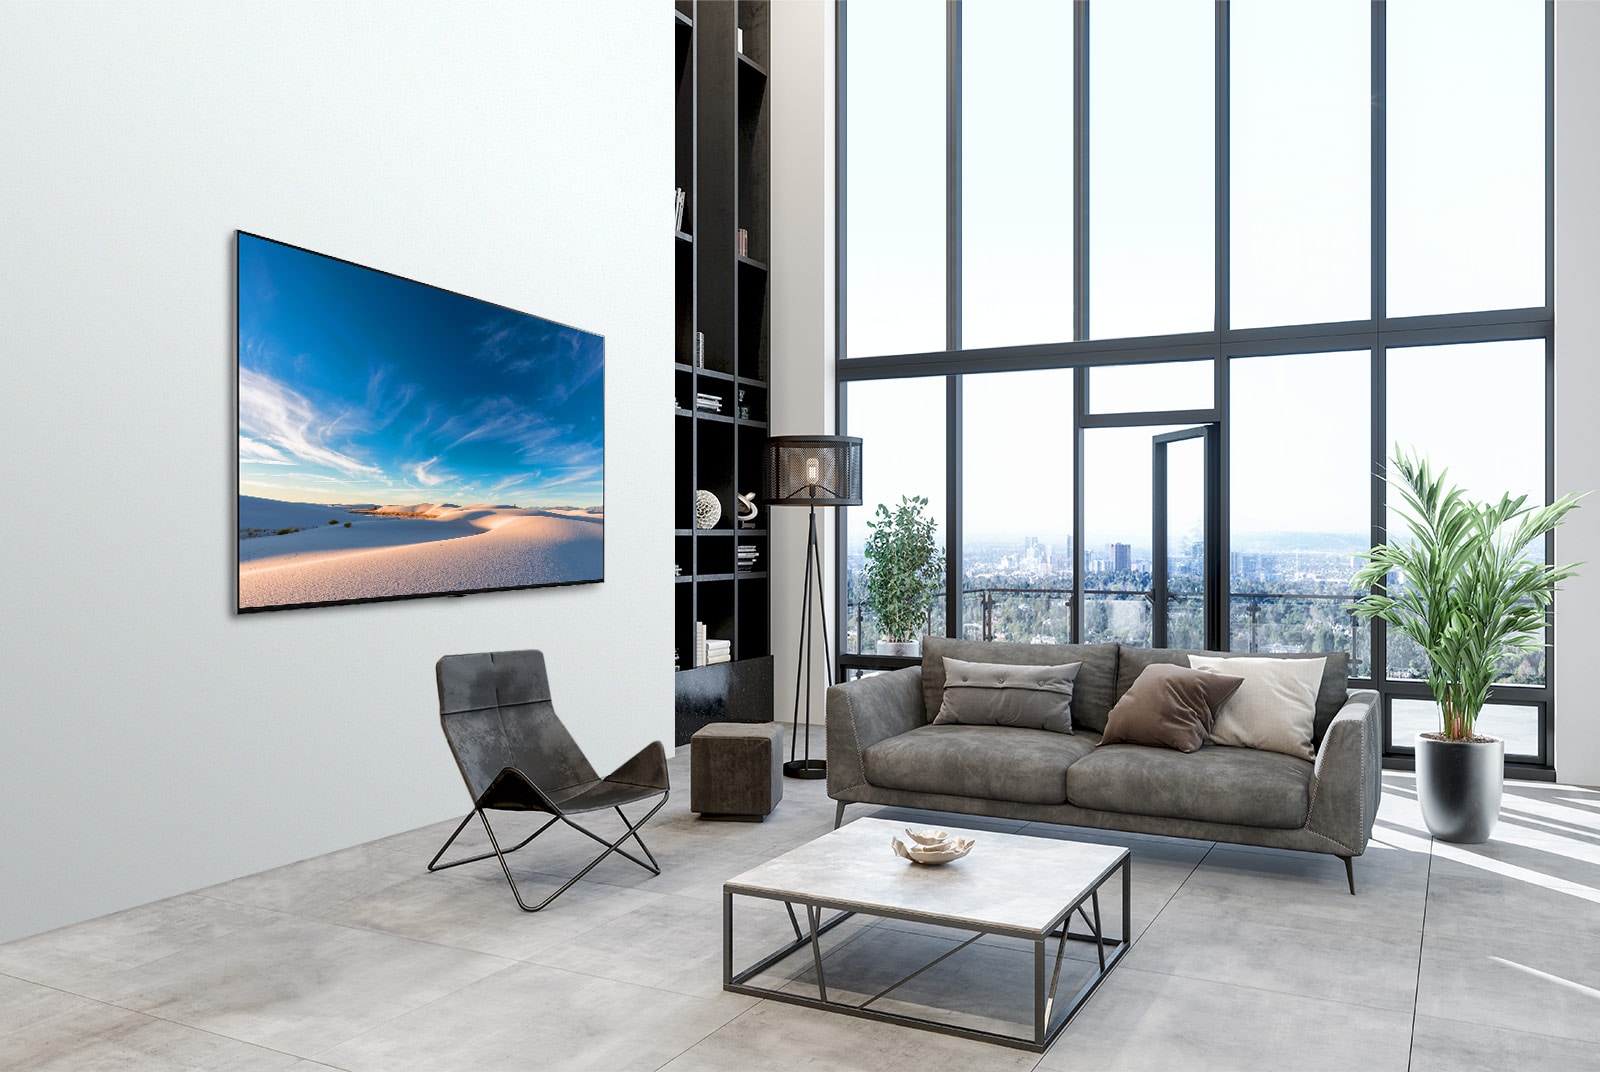 Televizor LG QNED pověšený proti stěně v moderním interiéru.